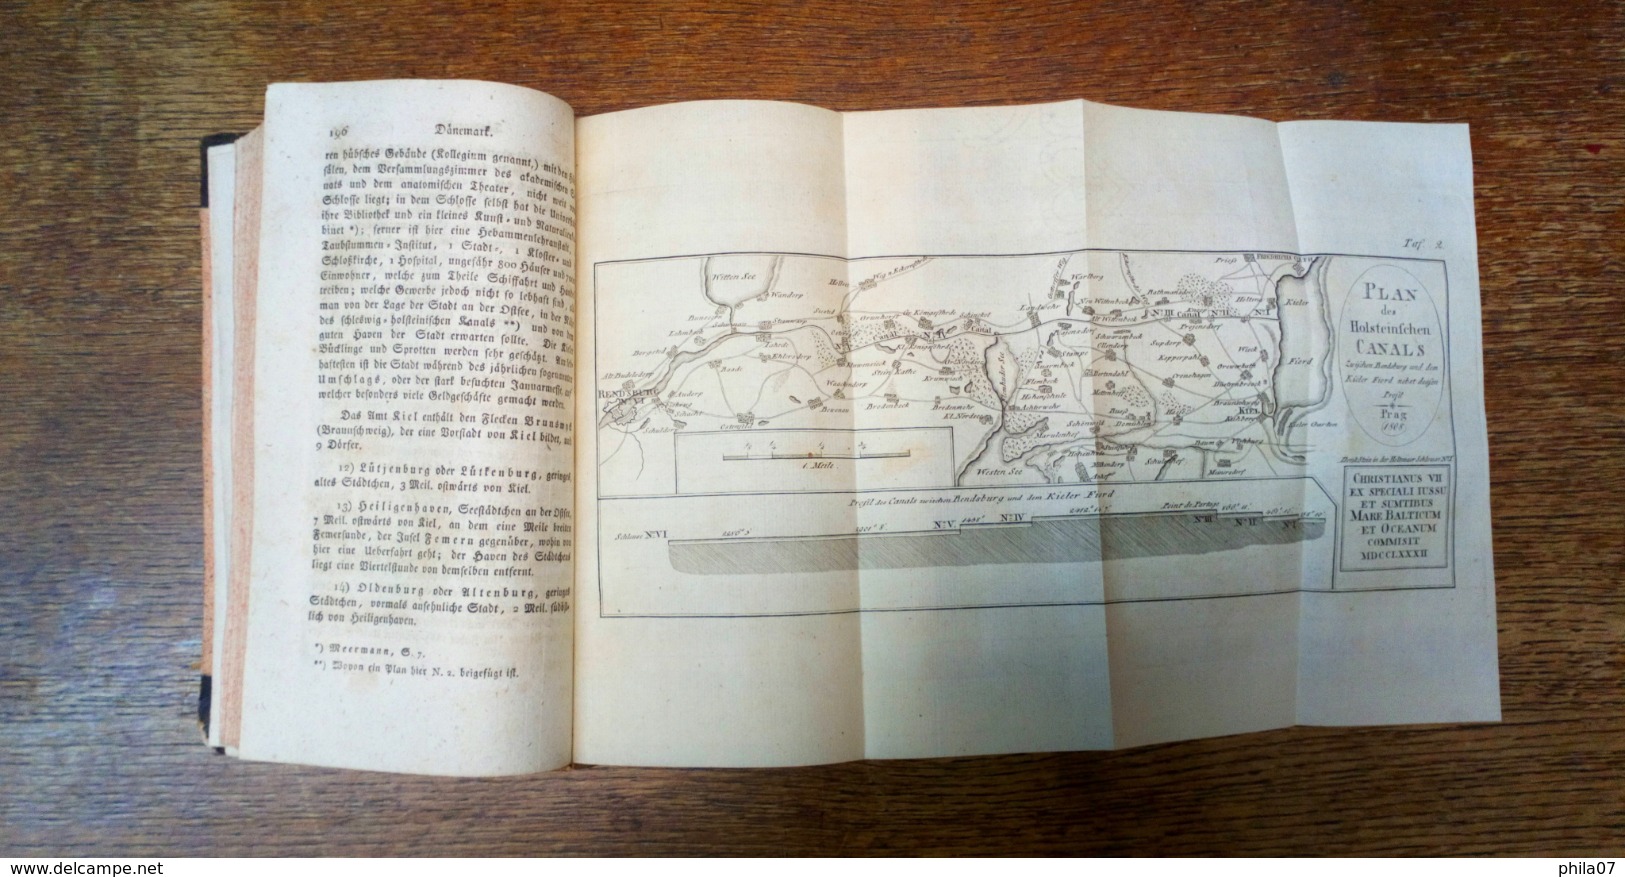 Book Nordische Reich Danmark, Norwegen und Schweden, edition Prague 1808. Complete book with over 600 pages, map of Denm